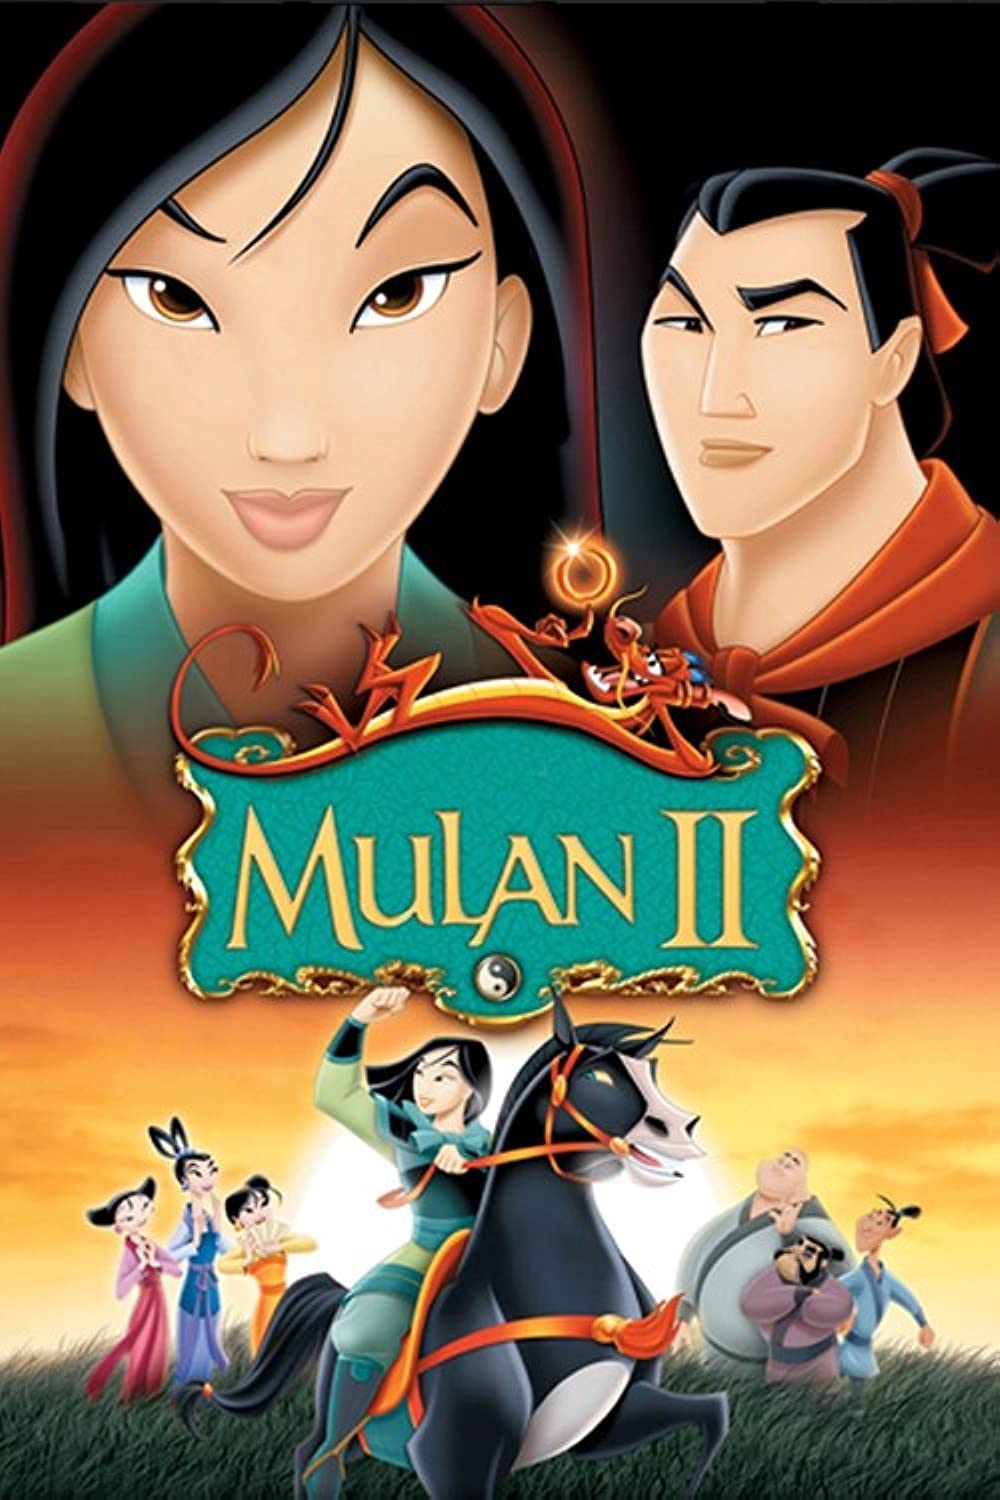 ดูหนังออนไลน์ฟรี Mulan II มู่หลาน 2 ตอน เจ้าหญิงสามพระองค์